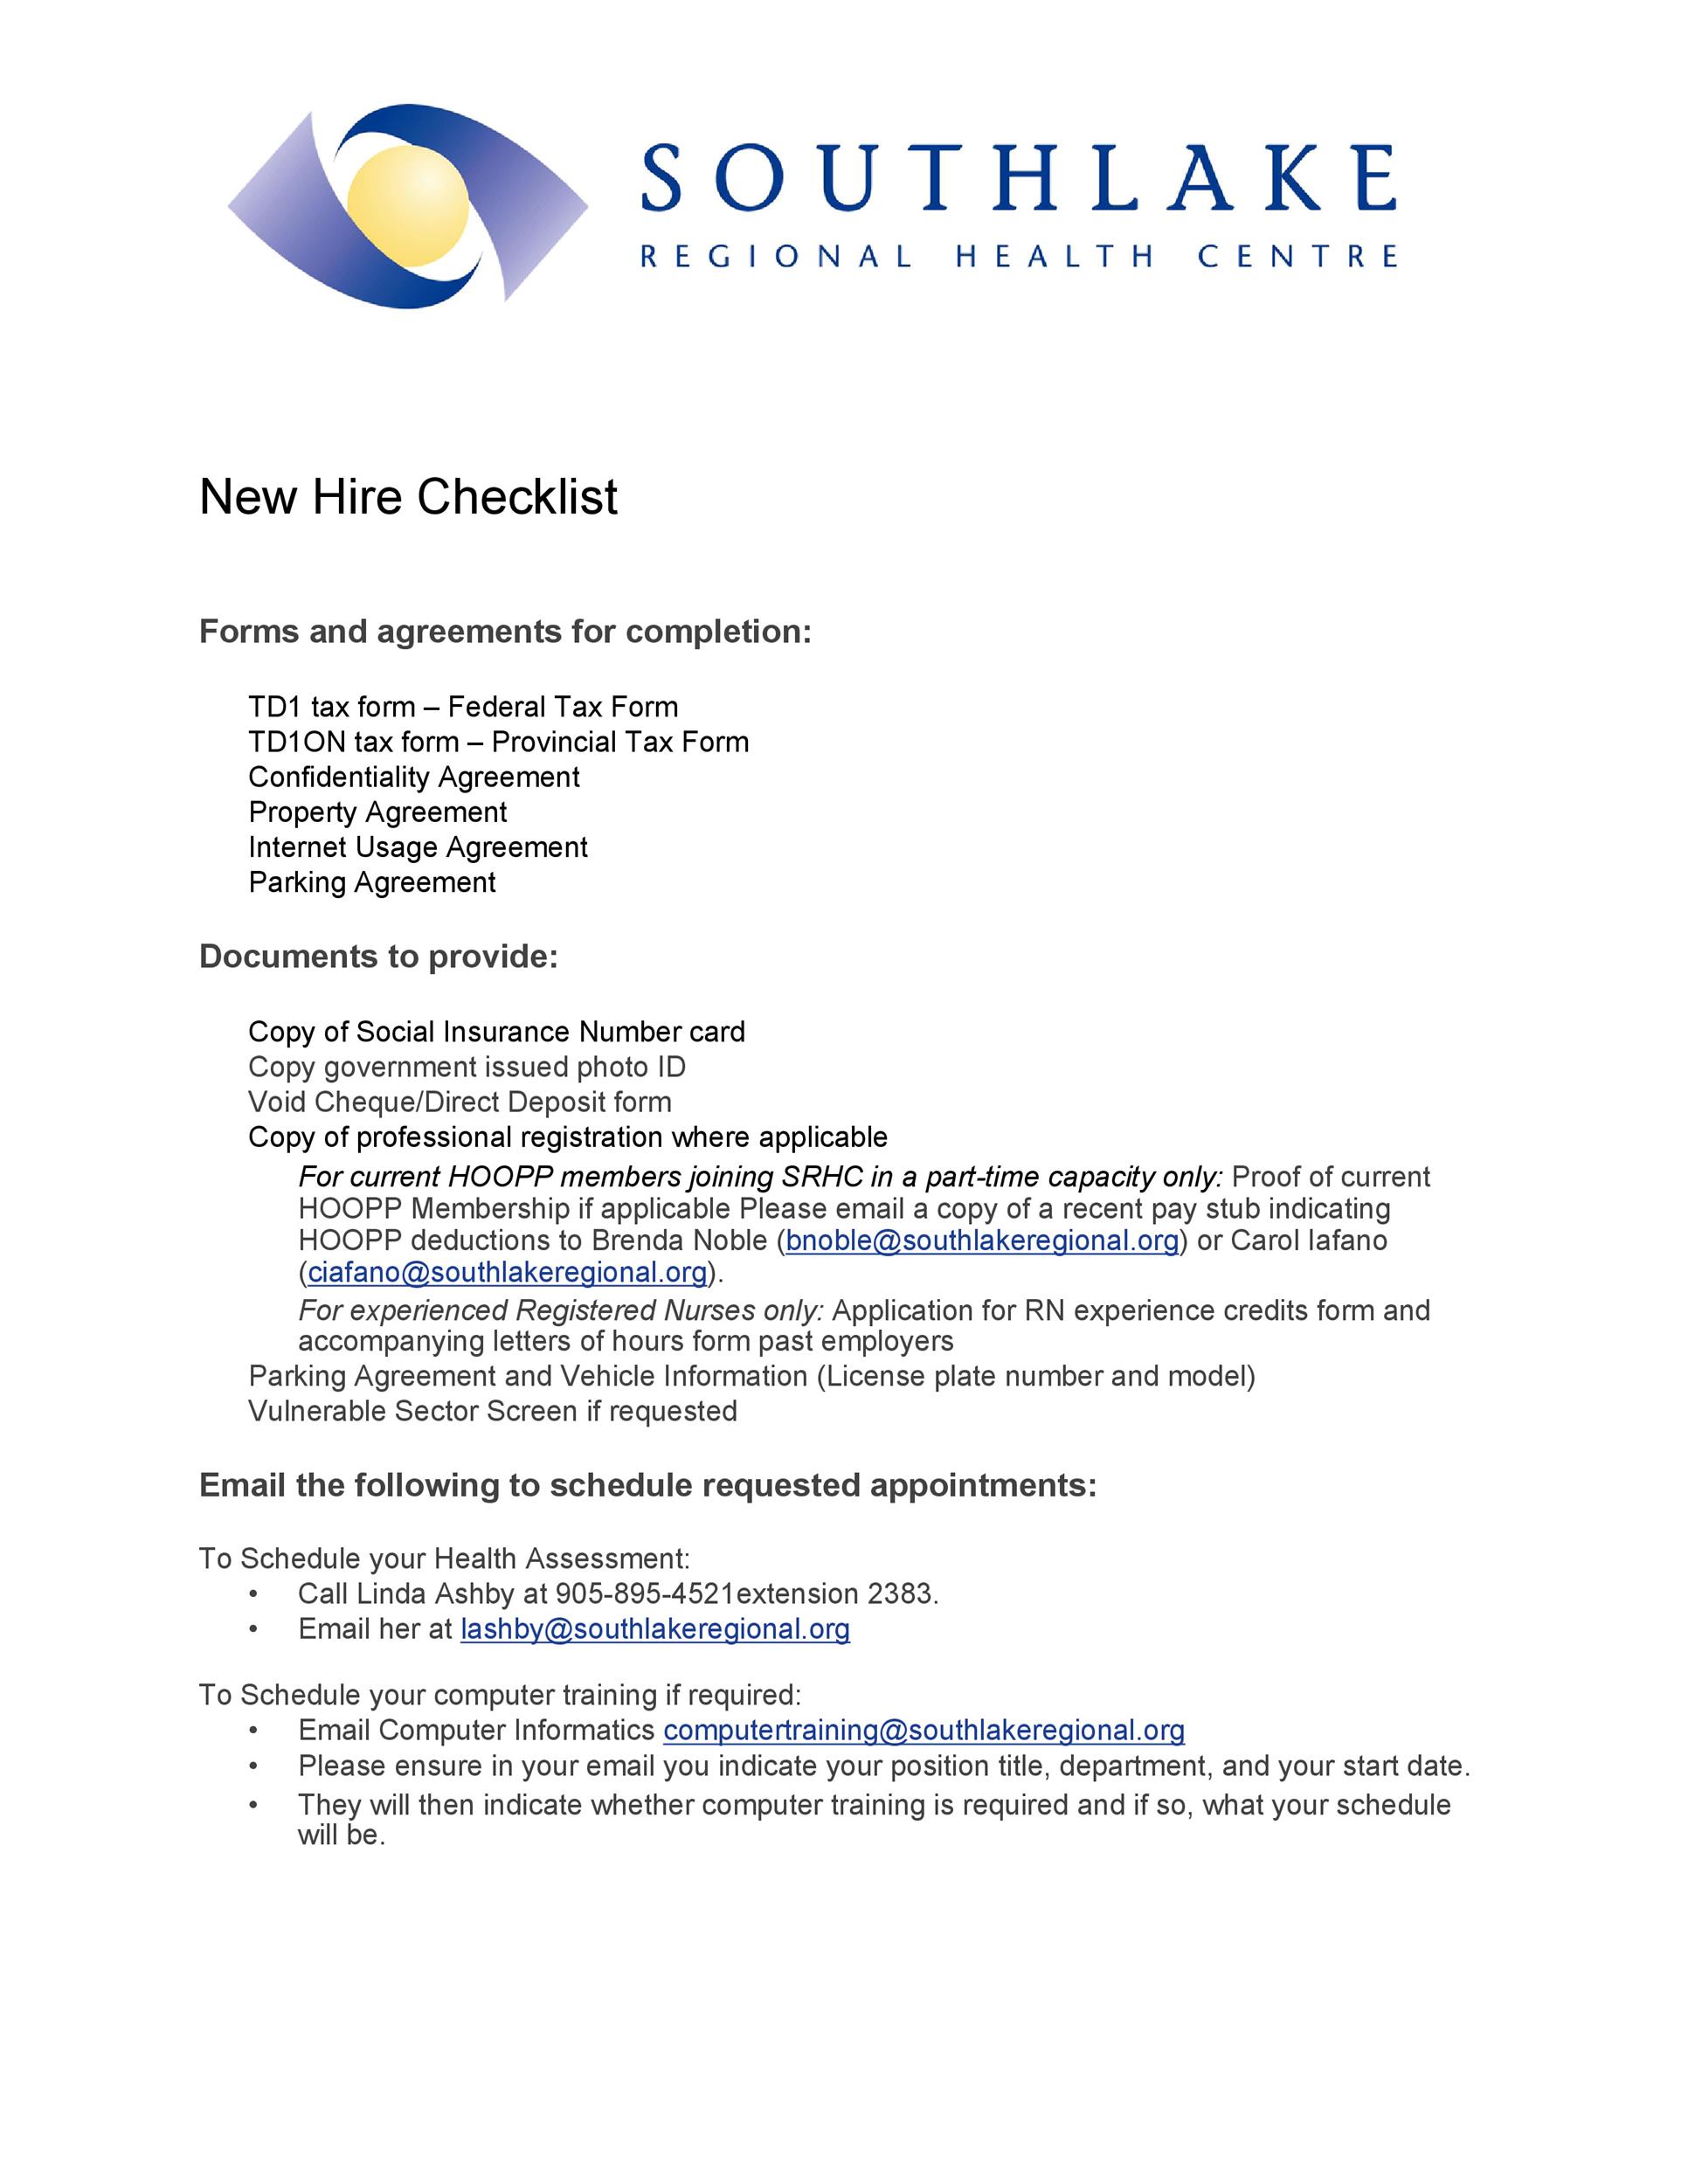 Free new hire checklist 36